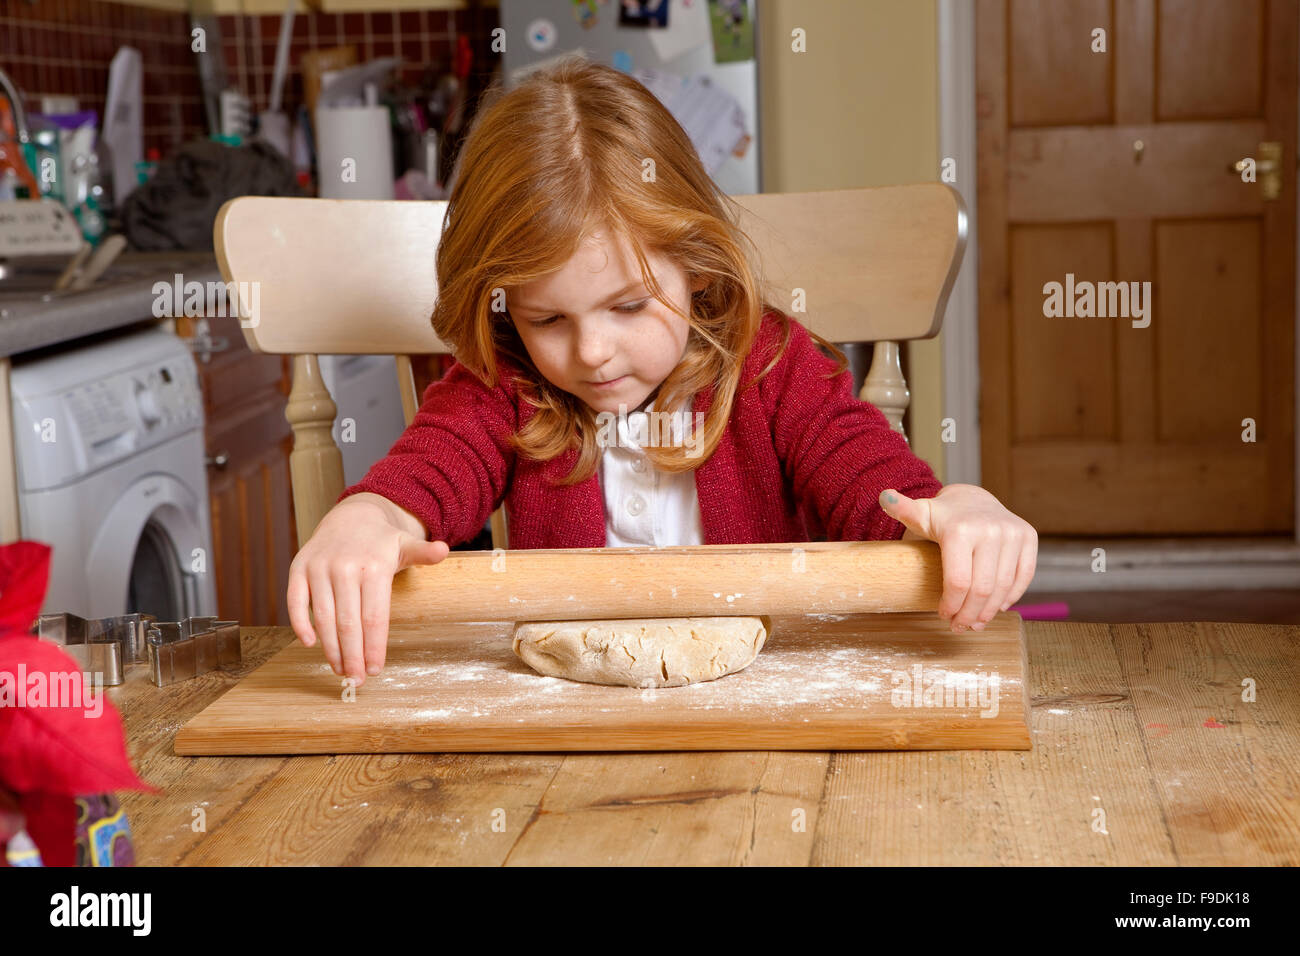 Una giovane ragazza è imparare i modi di cottura. Lei sta cercando di stendere la pasta per fare alcuni pan di zenzero biscotti. Foto Stock